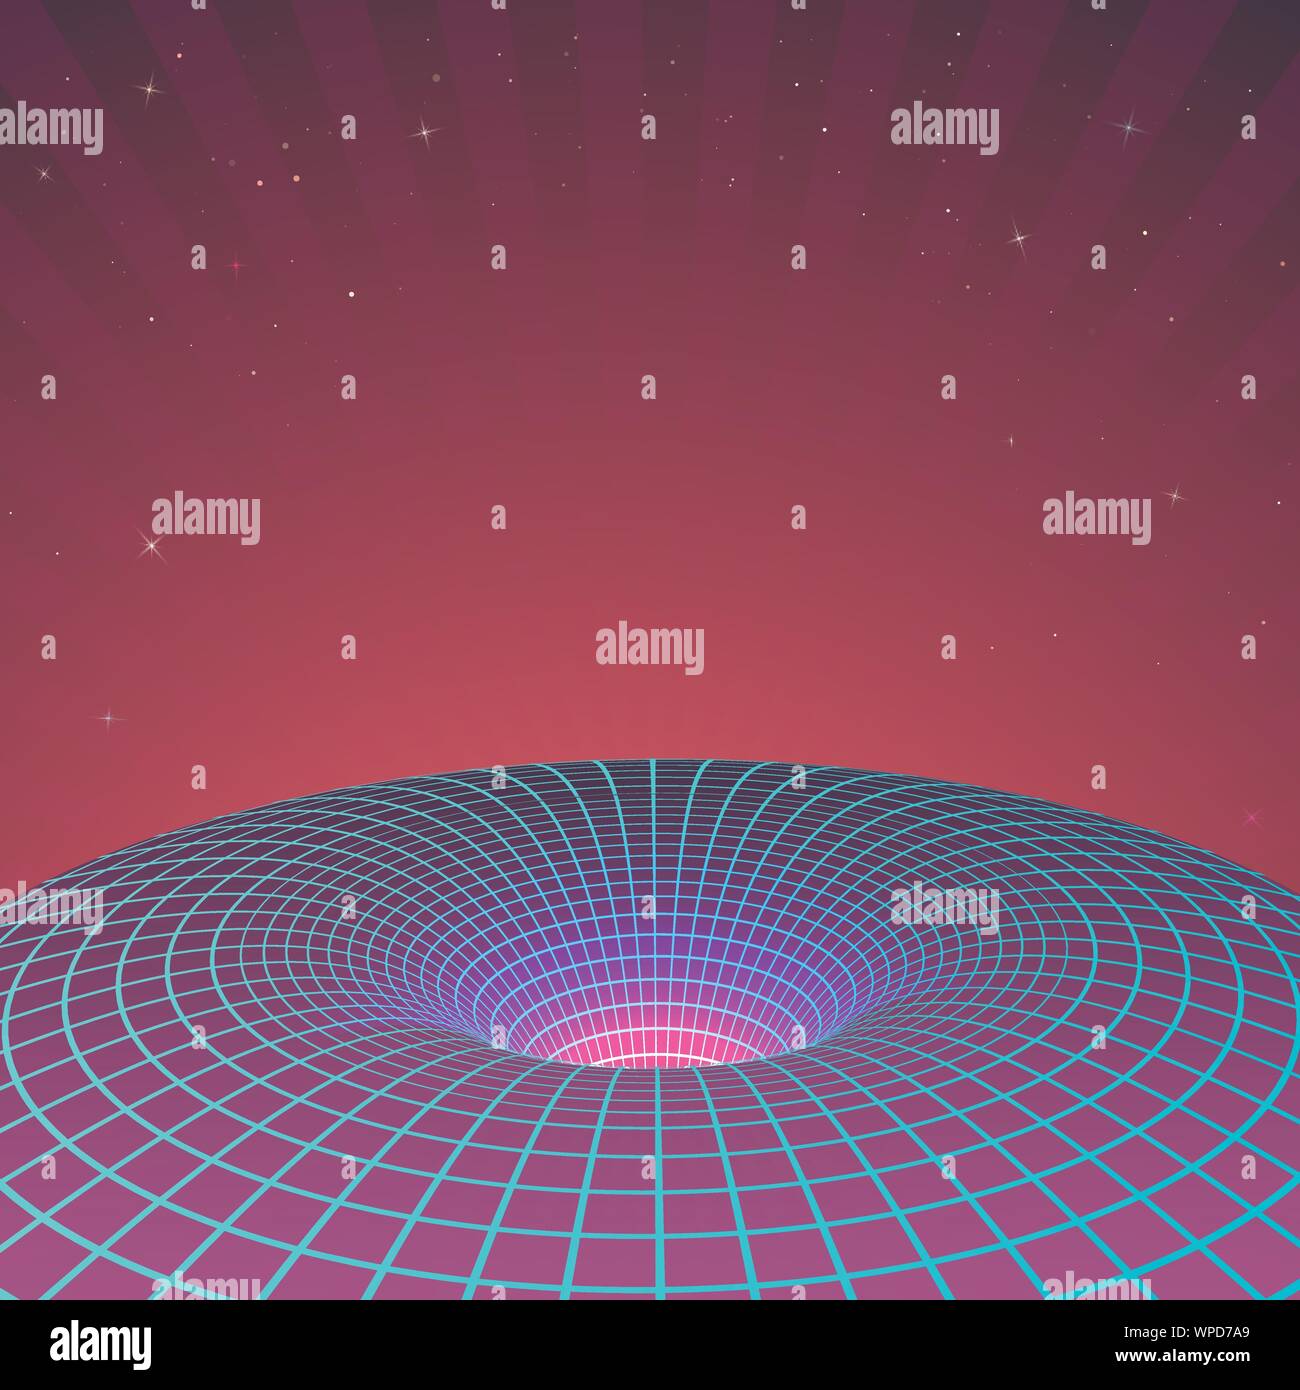 Schwarzes Loch in Neon Farben von 80 s oder 90 s. Sci-fi Poster Vorlage. Hintergrund oder Abdeckung für retrowave elektronische Musik Stil. Vector Illustration Stock Vektor